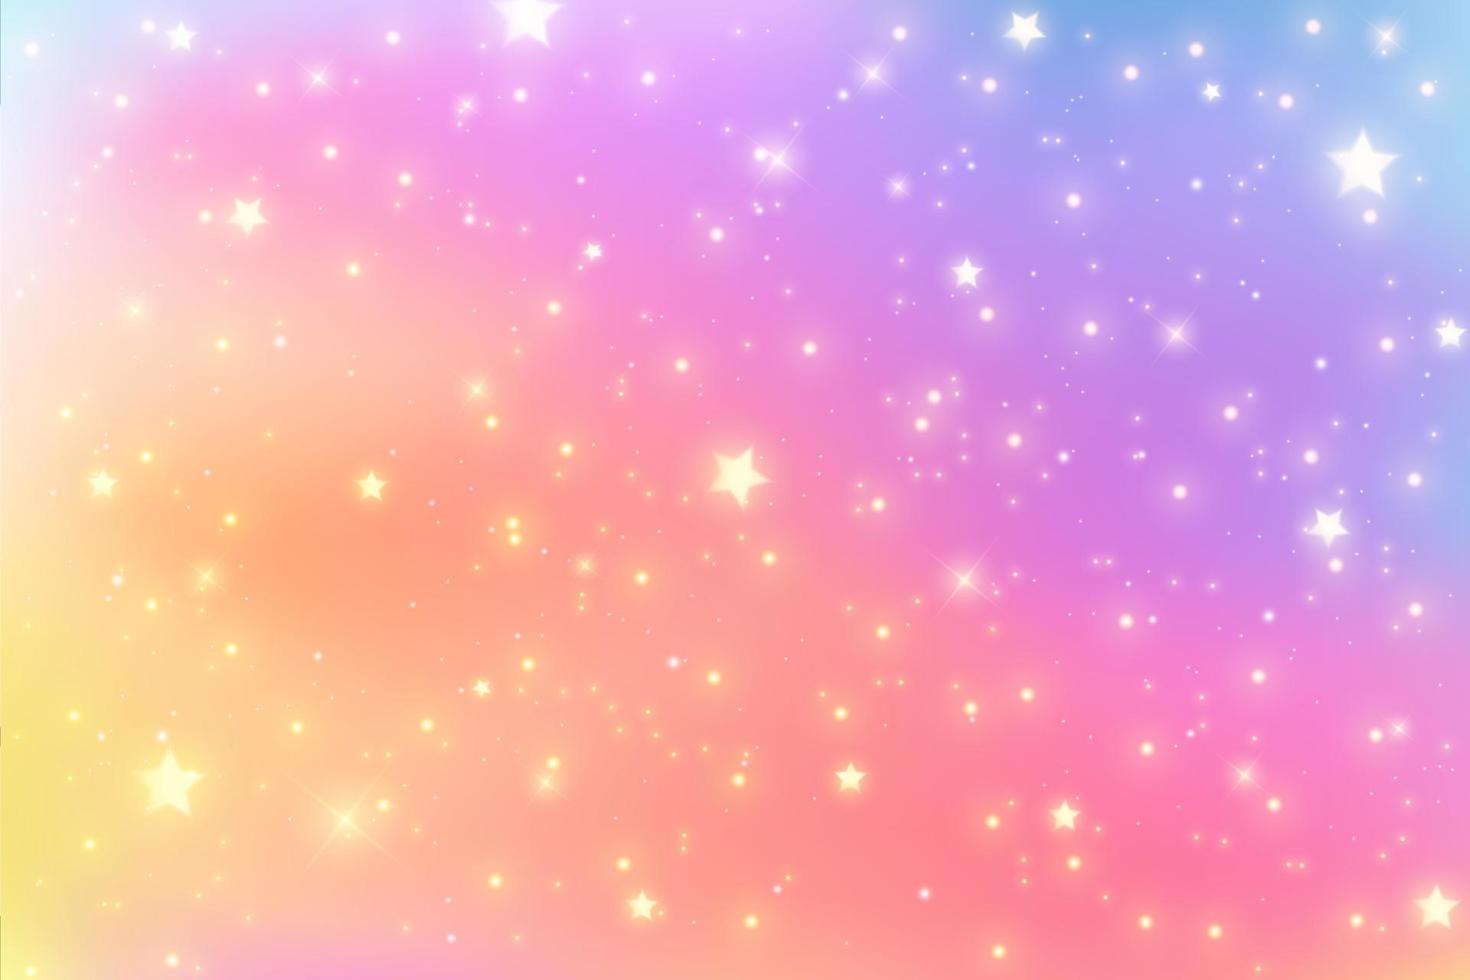 fundo de fantasia de arco-íris. ilustração holográfica em cores pastel. fundo feminino bonito dos desenhos animados. céu multicolorido brilhante com estrelas. vetor. vetor